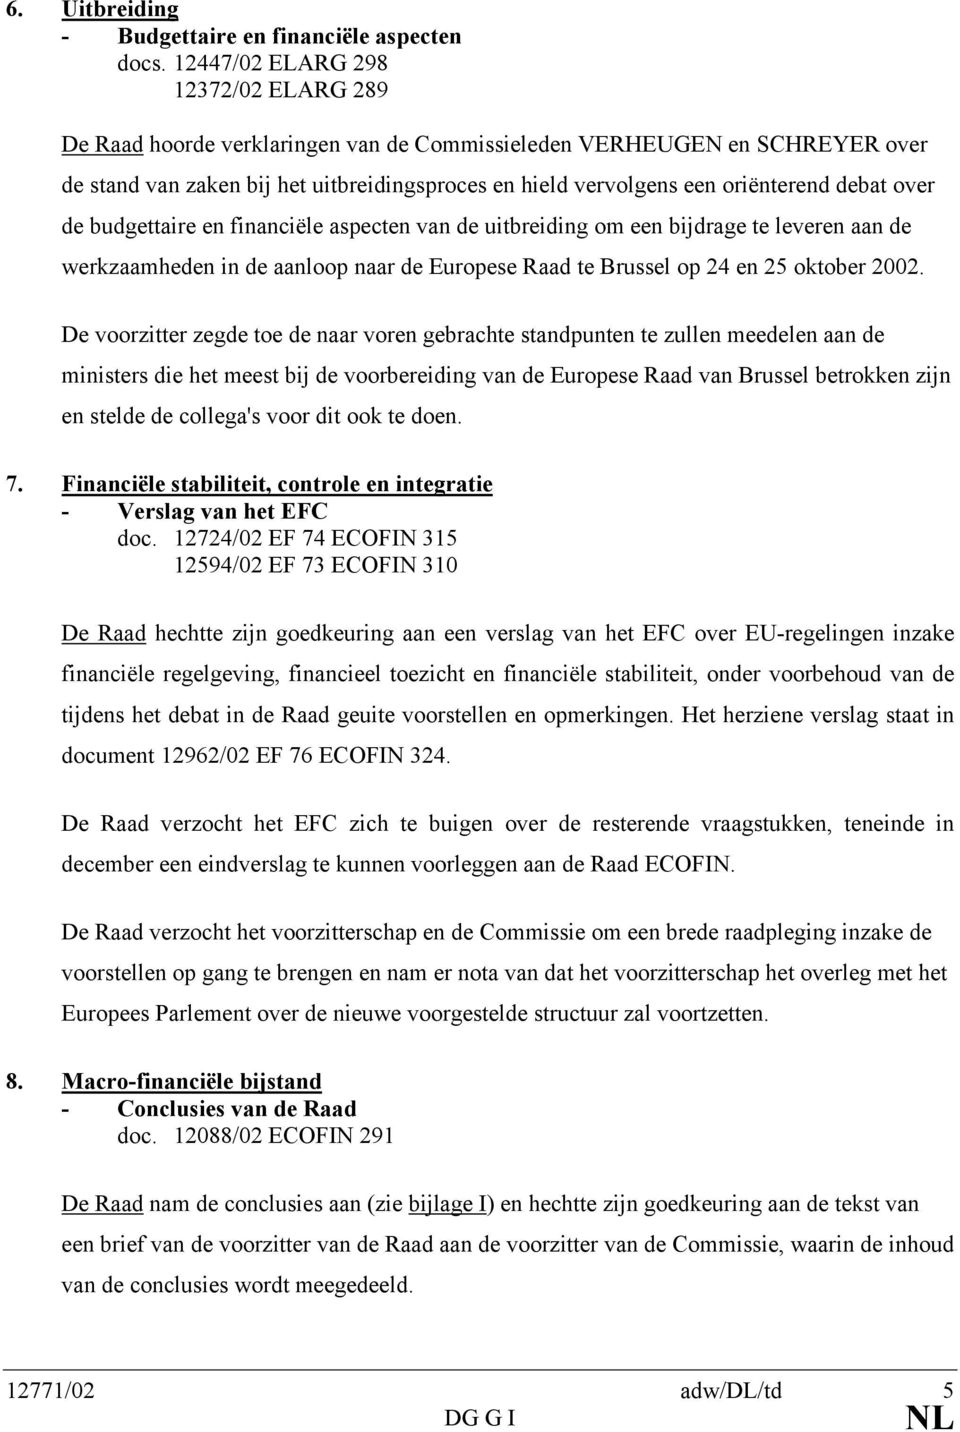 debat over de budgettaire en financiële aspecten van de uitbreiding om een bijdrage te leveren aan de werkzaamheden in de aanloop naar de Europese Raad te Brussel op 24 en 25 oktober 2002.